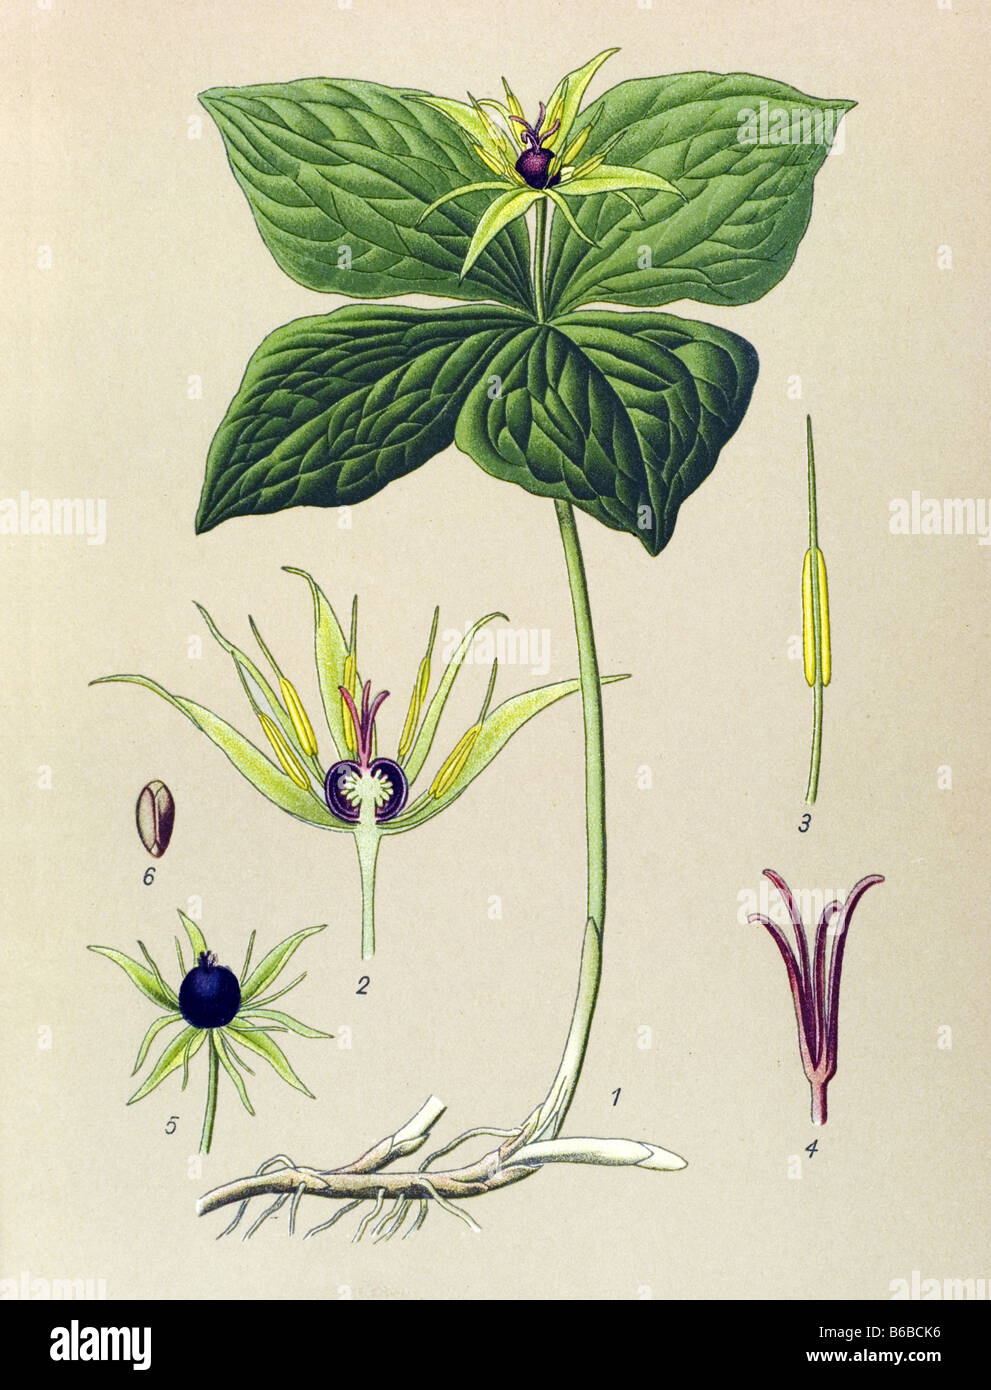 Paris quadrifolia, True-lover's Knot, poisonous plants illustrations Stock Photo